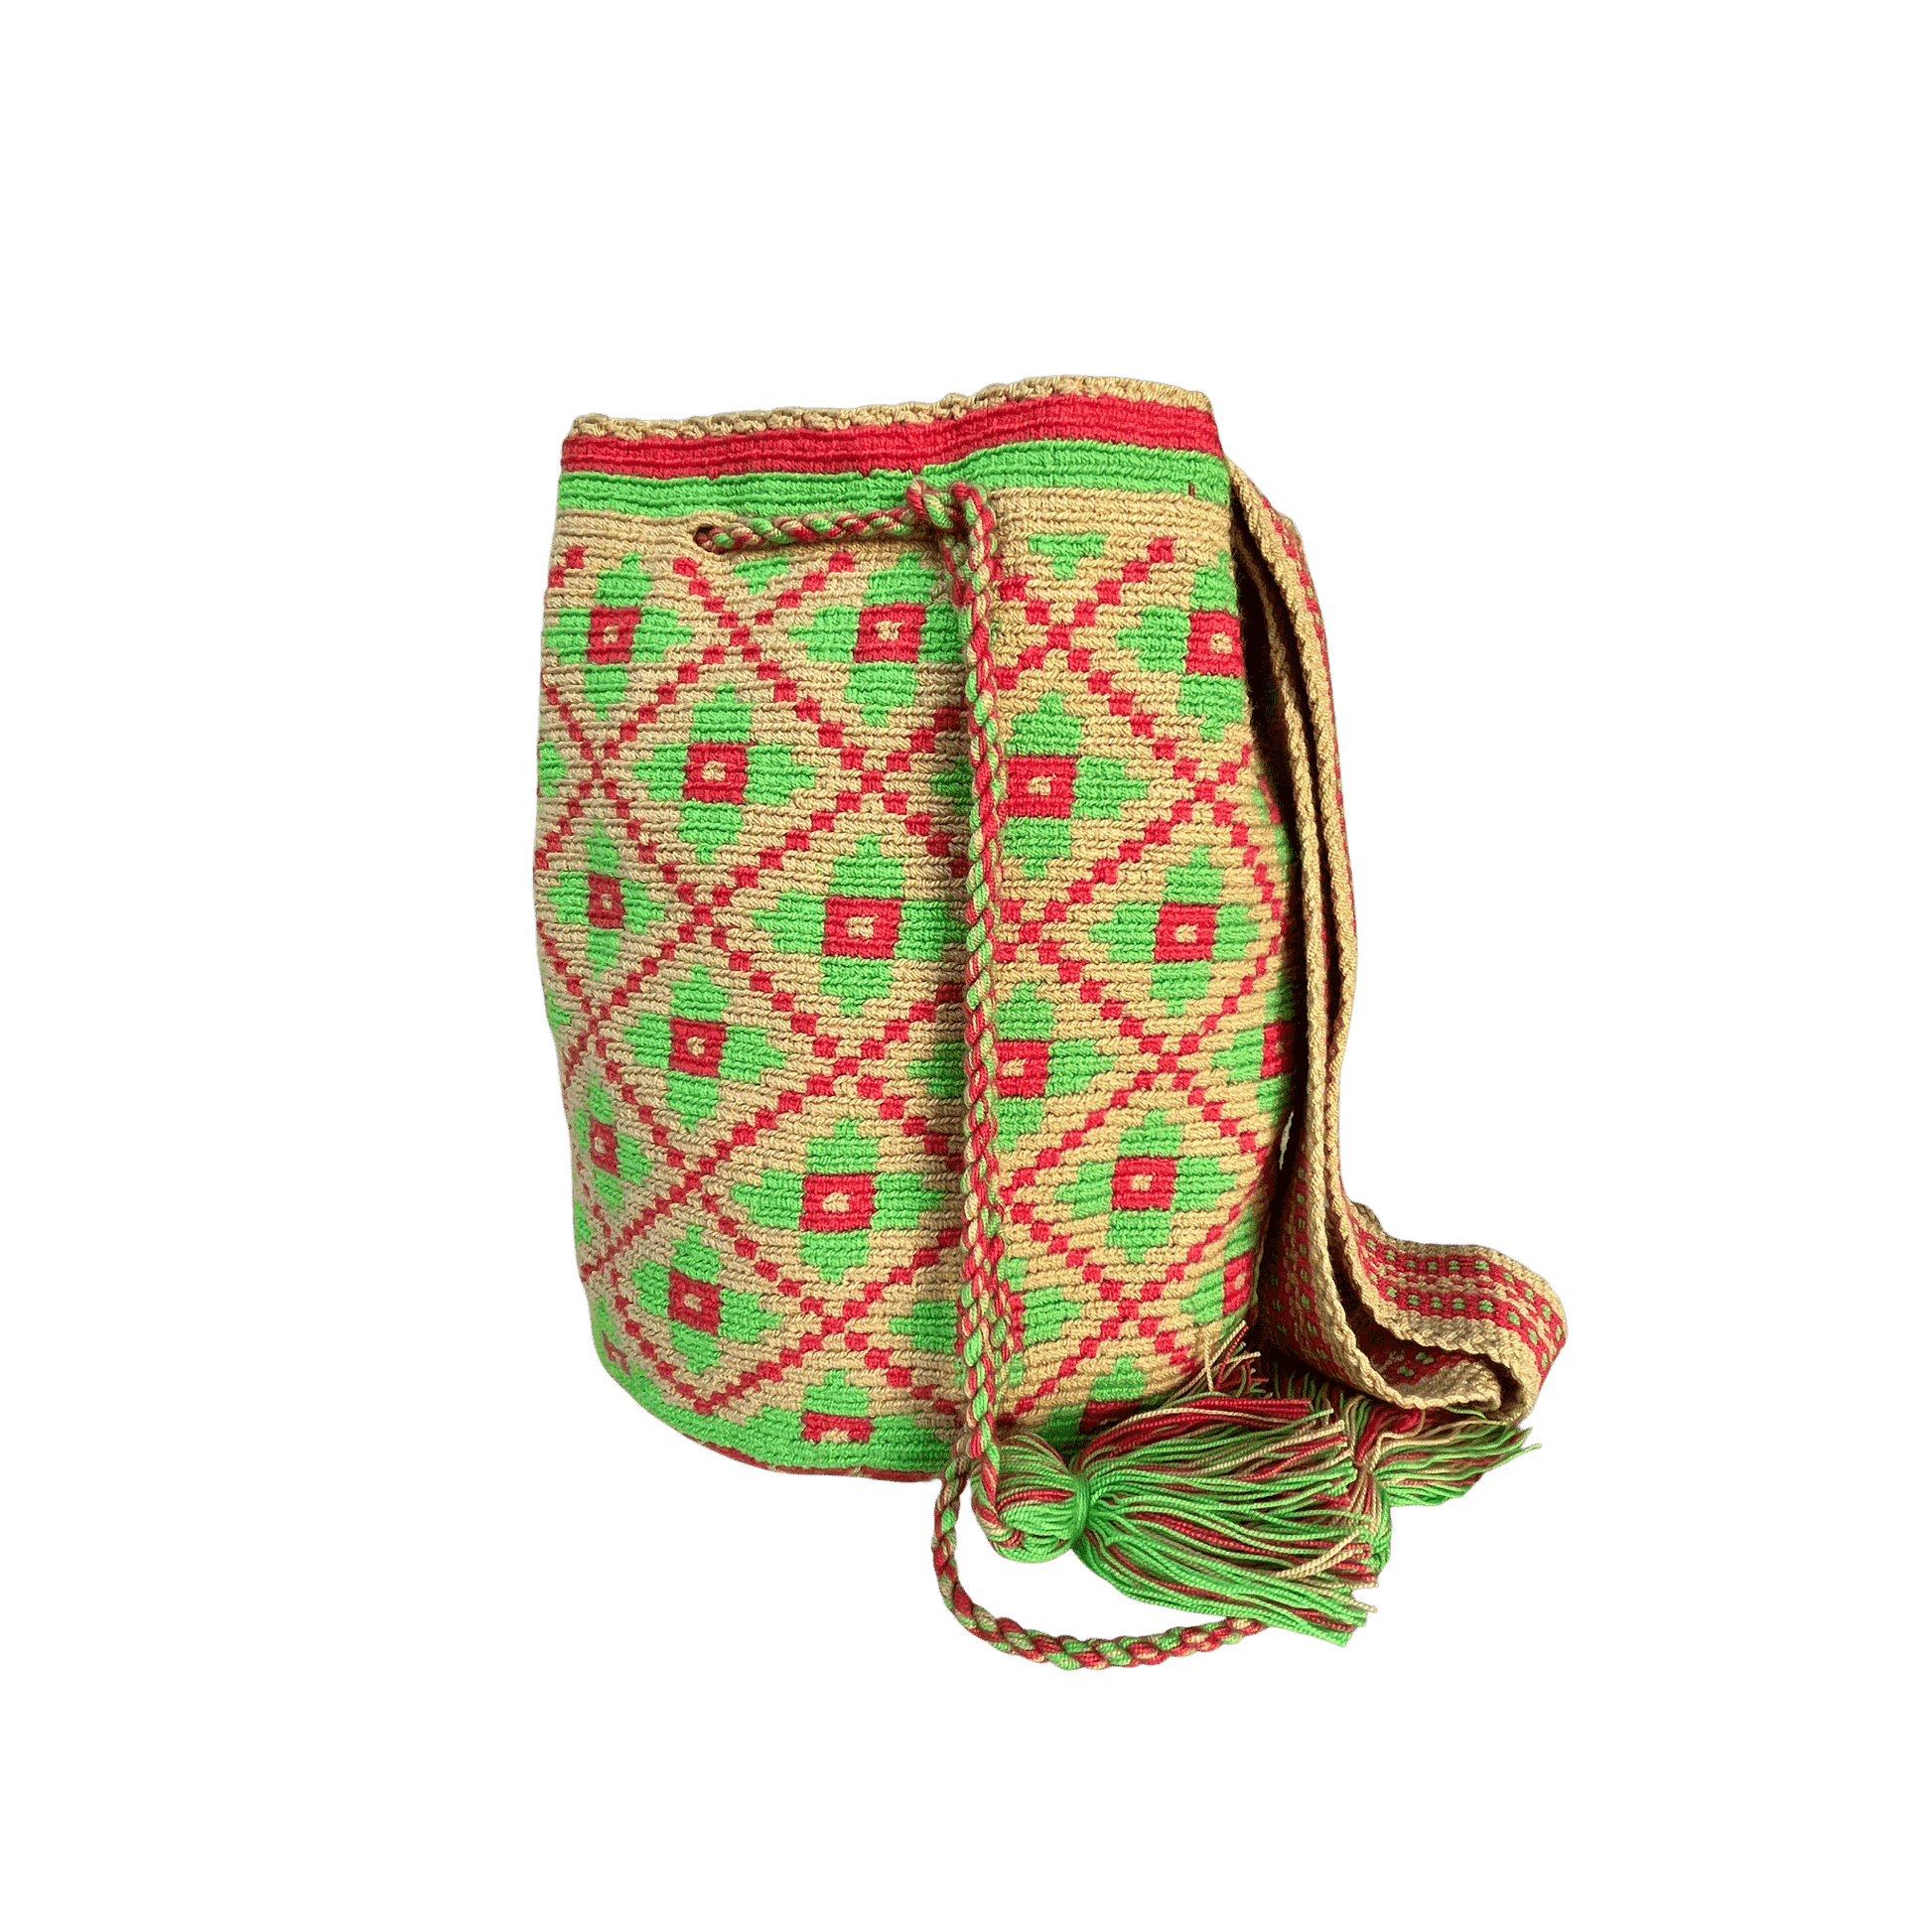 Mochila original wayuu tejida a mano con diseño de flores en colores rojo y verde